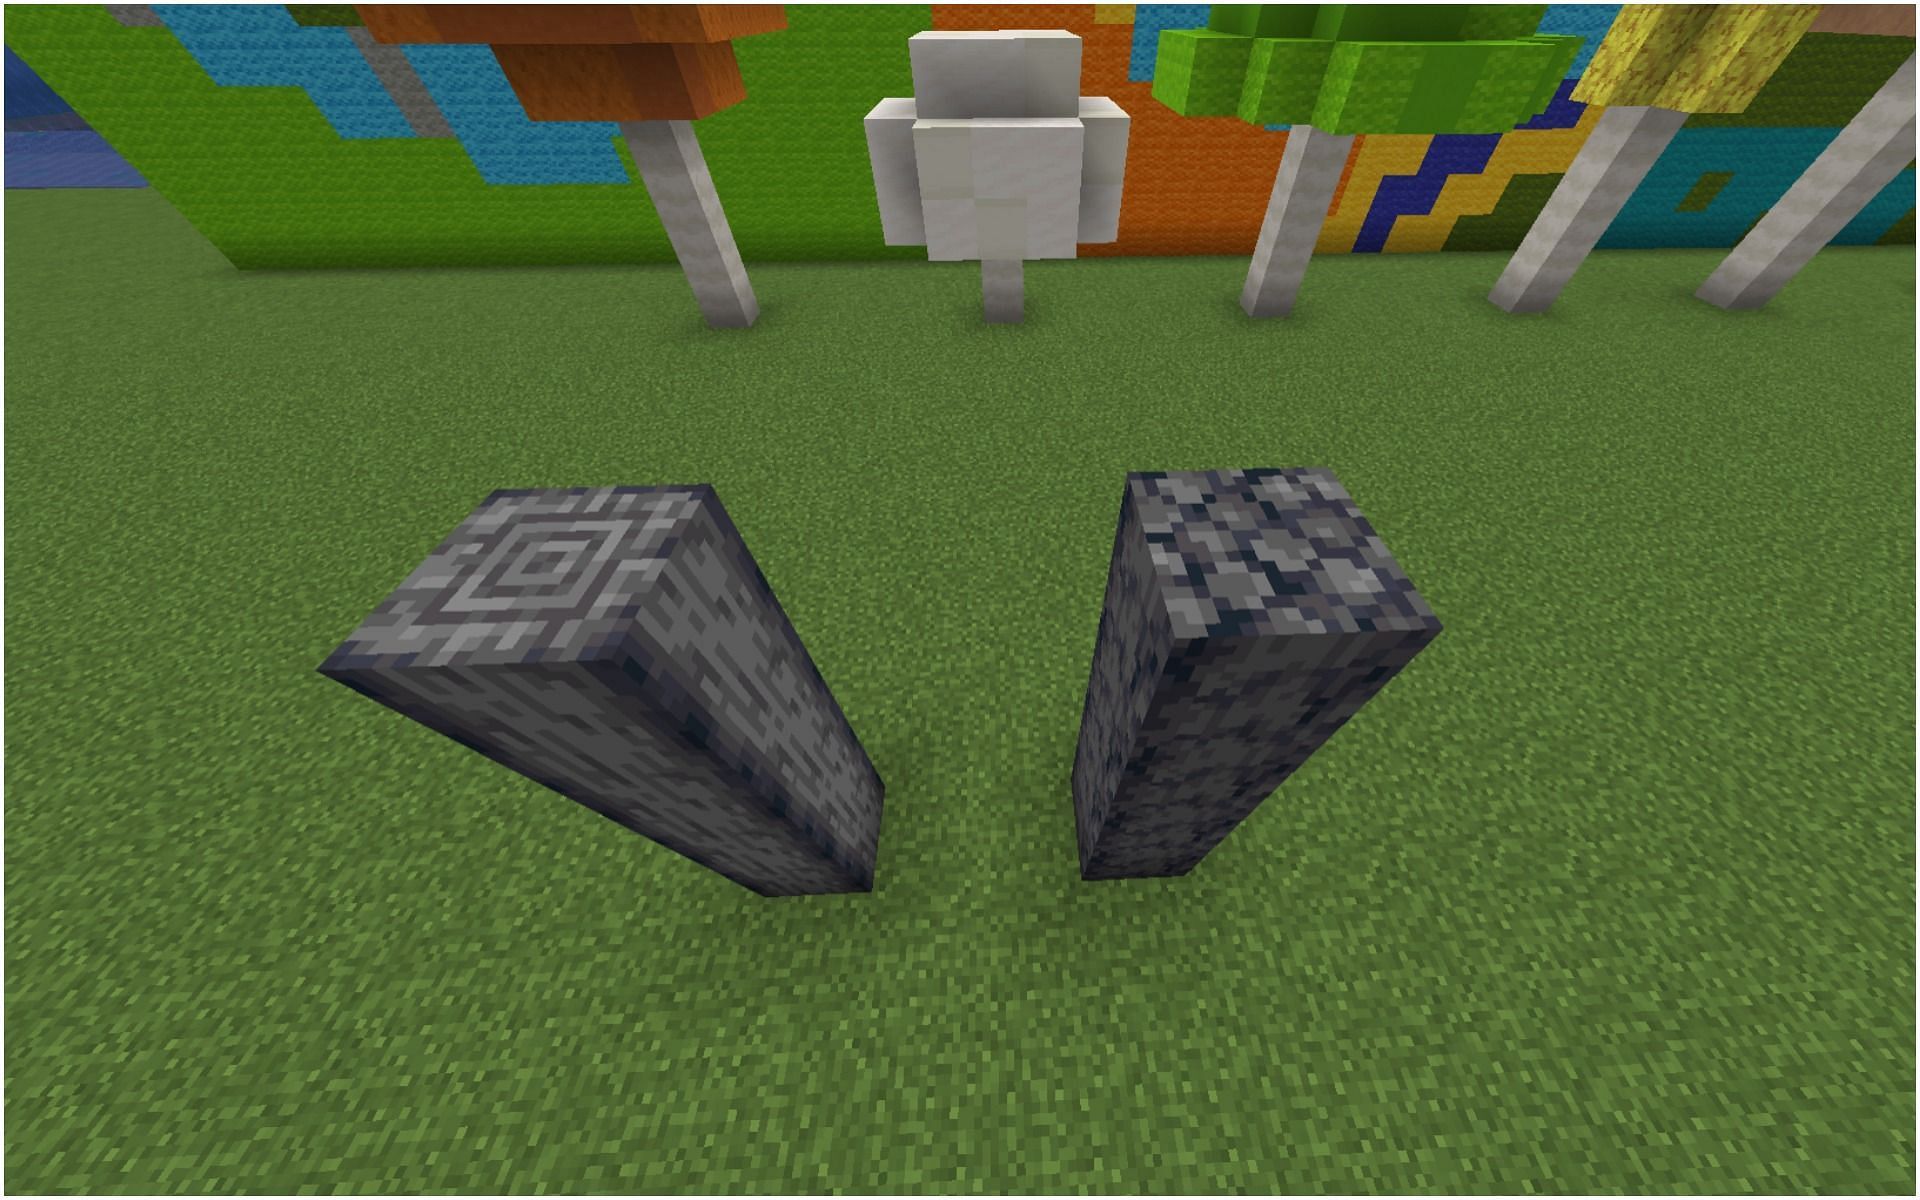 Regular basalt (left) vs smooth basalt (right) (Image via Minecraft)